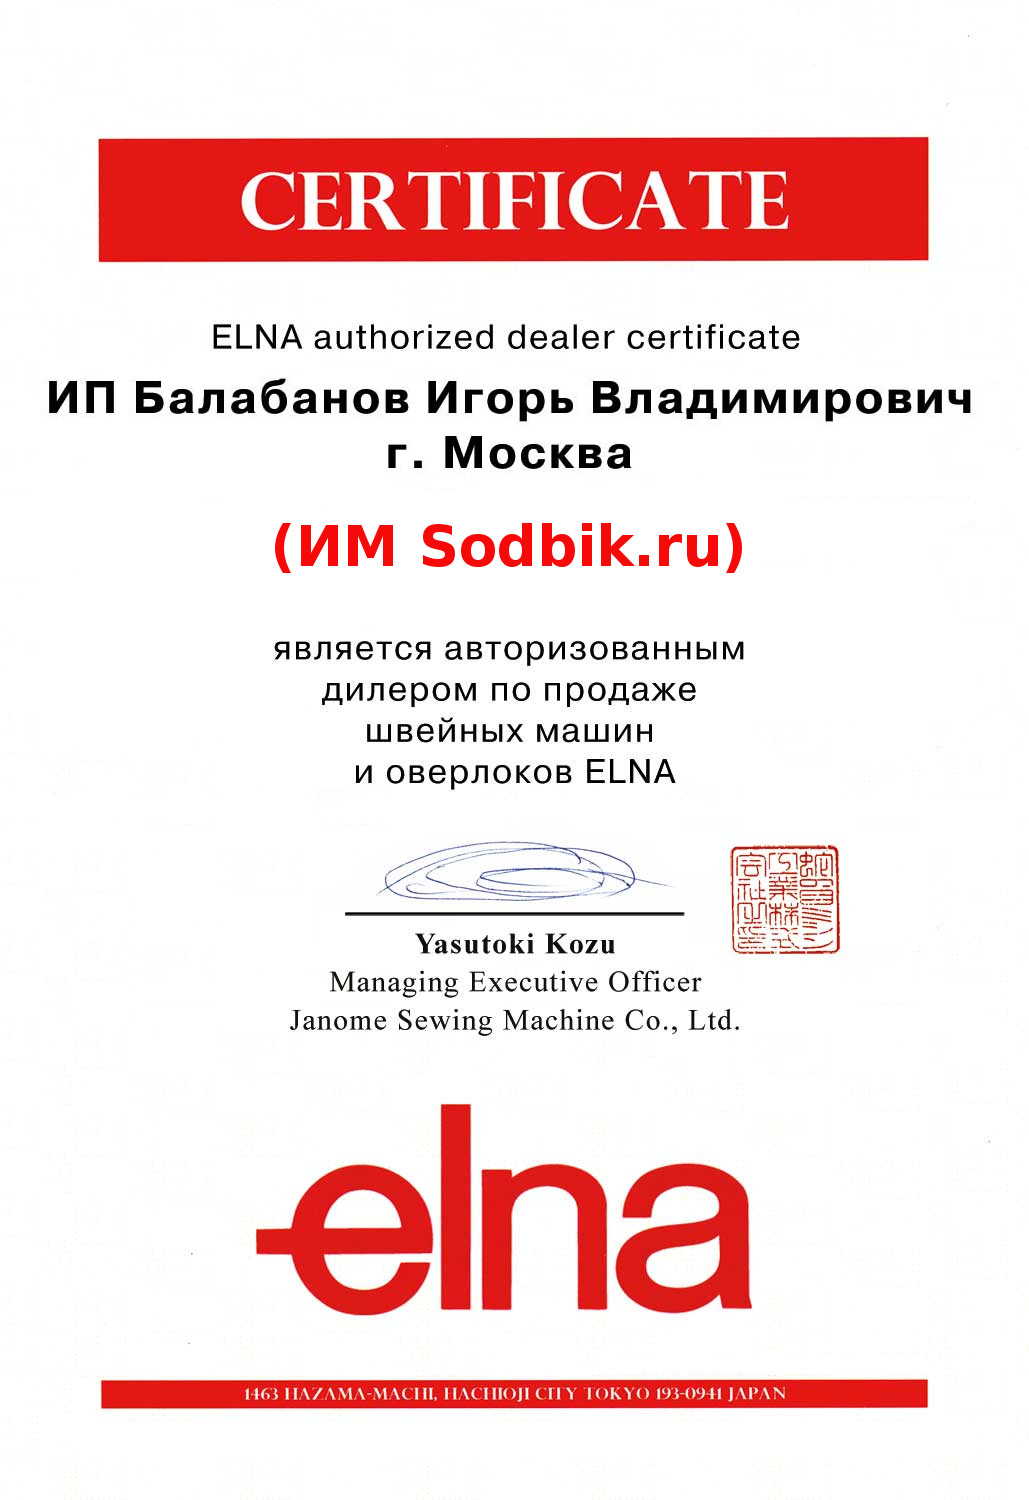 Sodbik.ru официальный дилер Elna в России